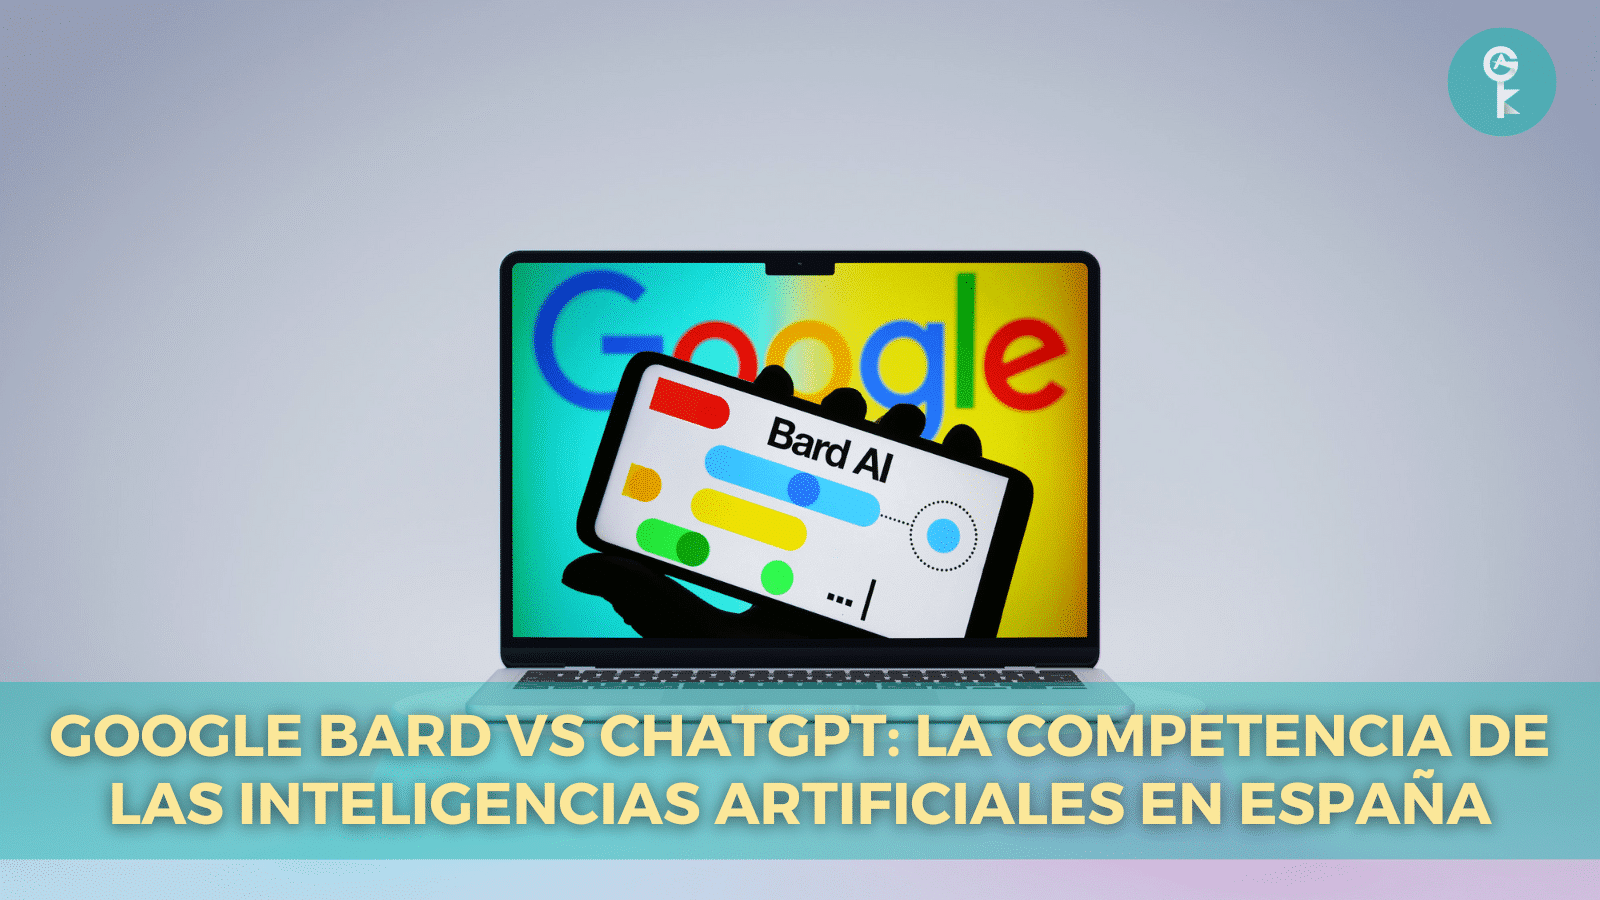 Google Bard vs ChatGPT: La Competencia de las Inteligencias Artificiales en España